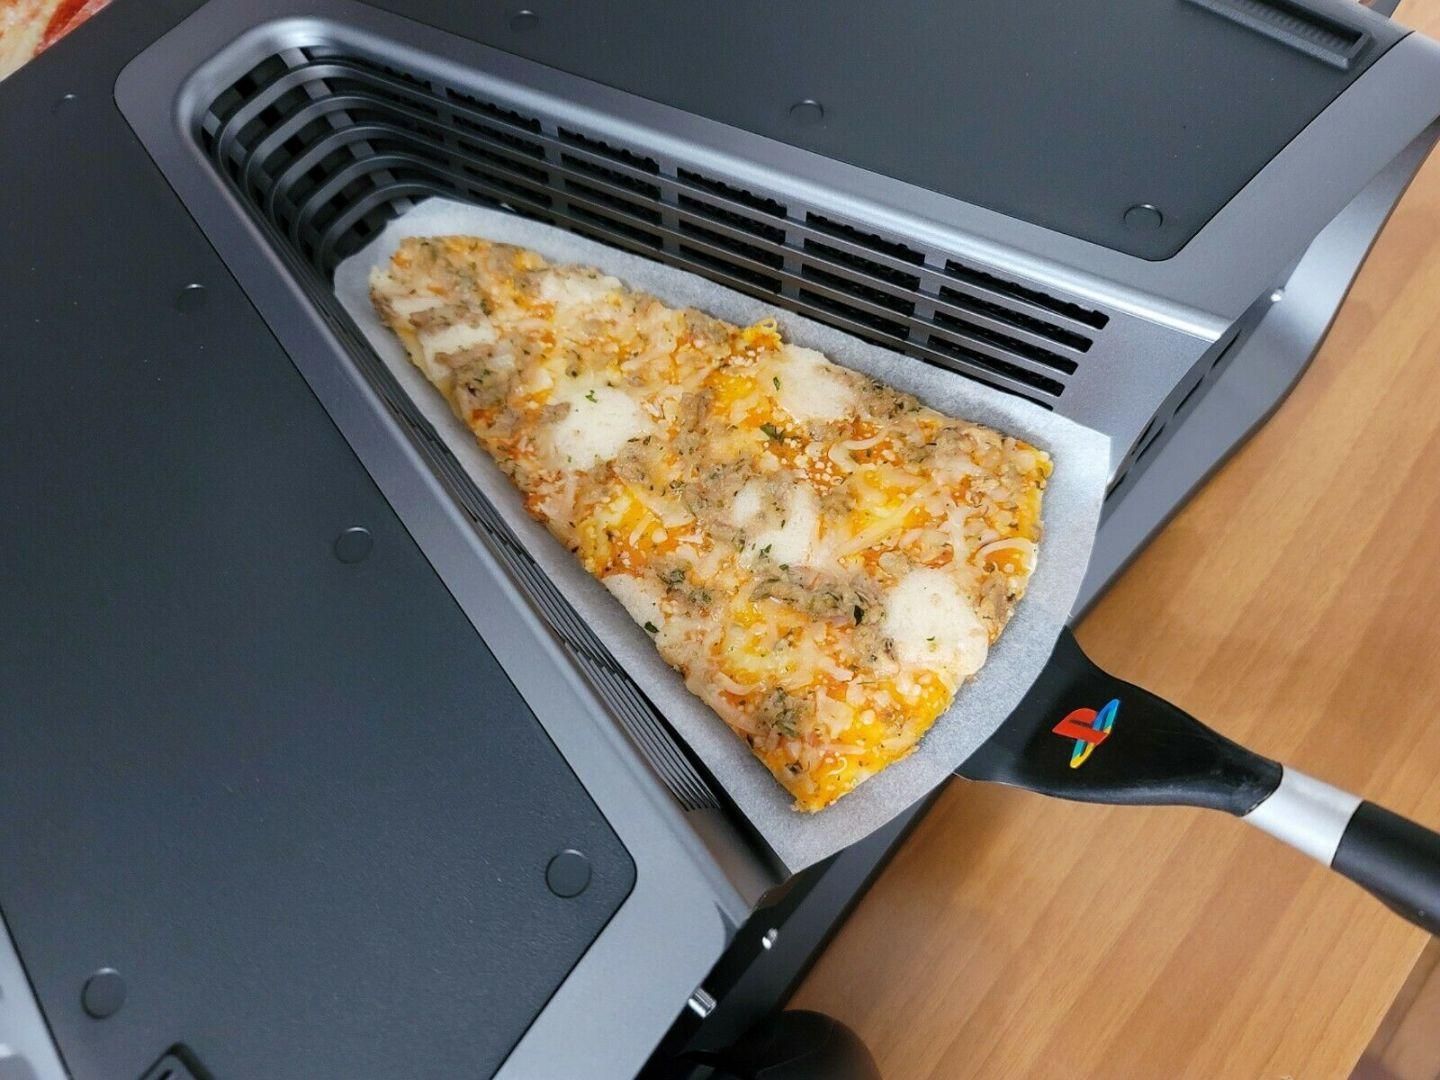 Прототип PlayStation 5 продали на eBay под видом устройства для приготовления пиццы